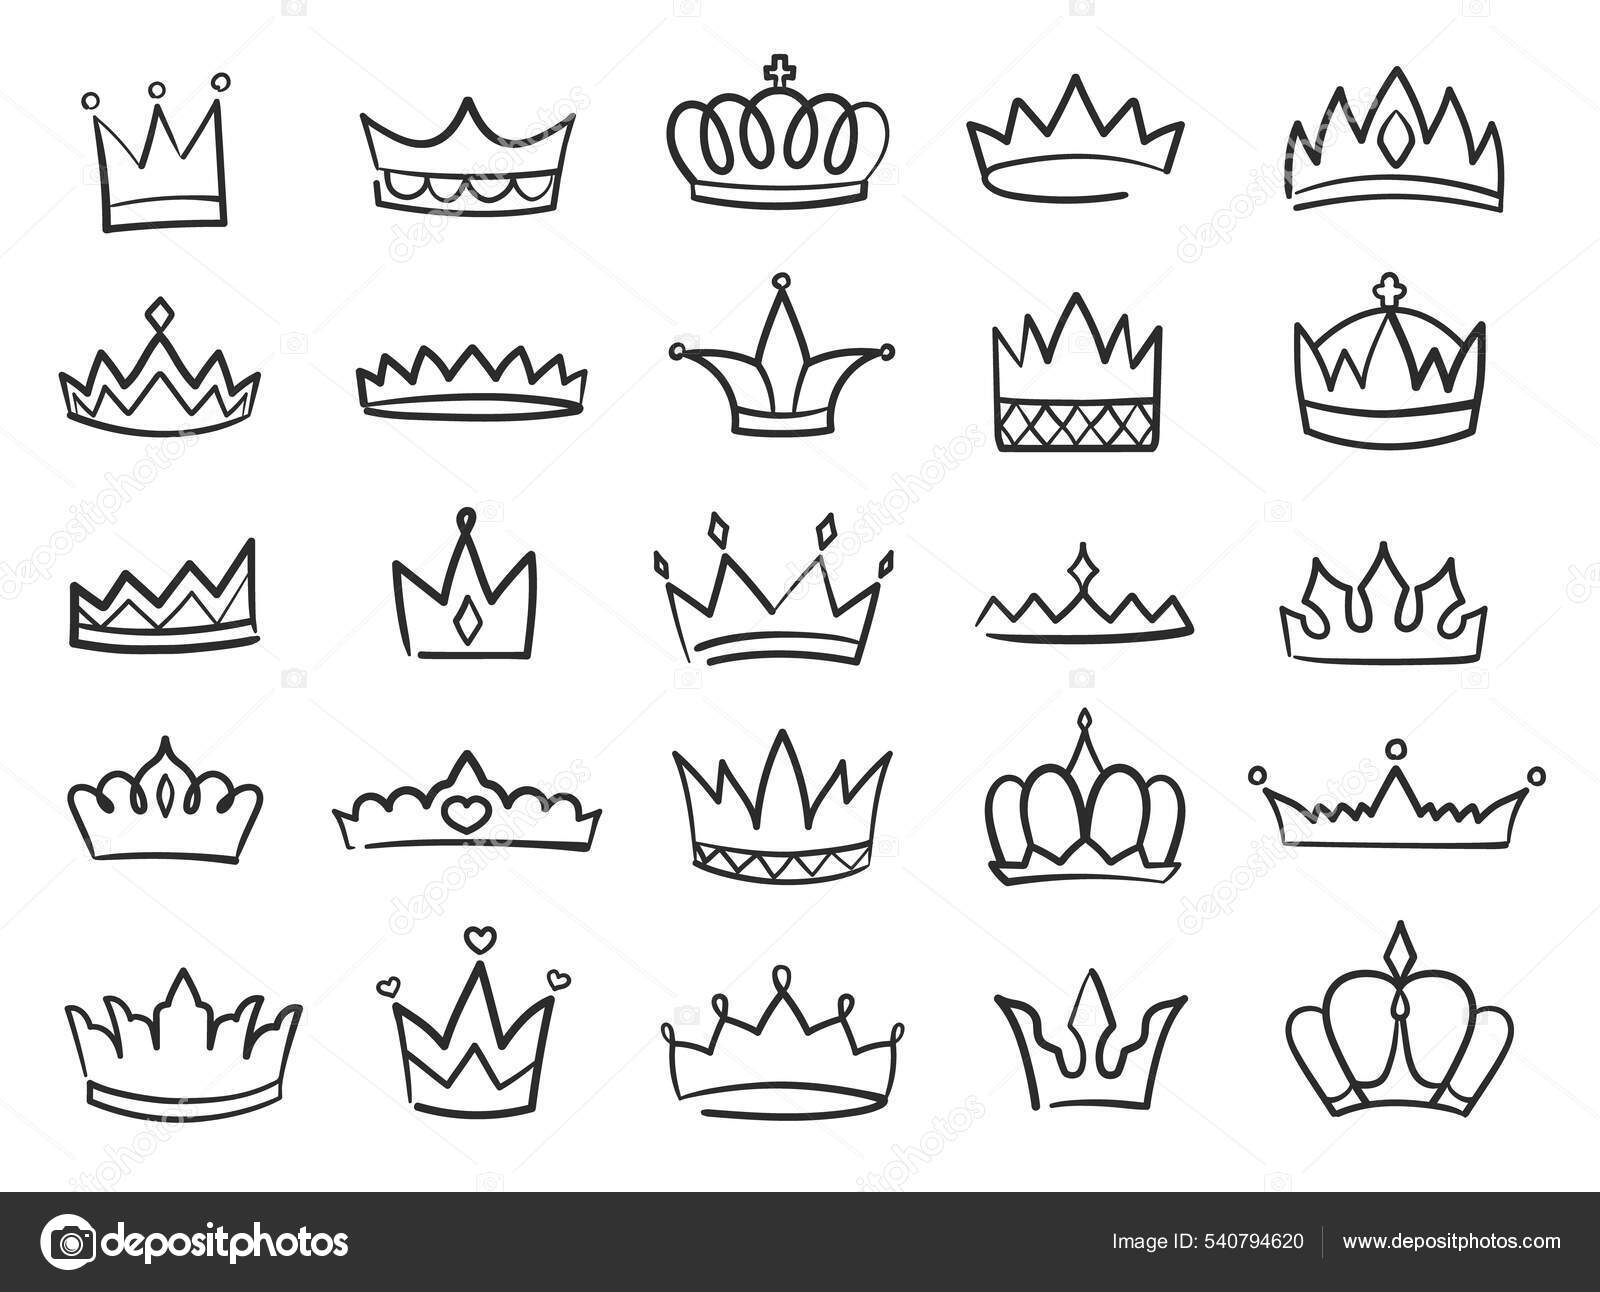 2,777 Queen Crown Engraving Images, Stock Photos & Vectors | Shutterstock